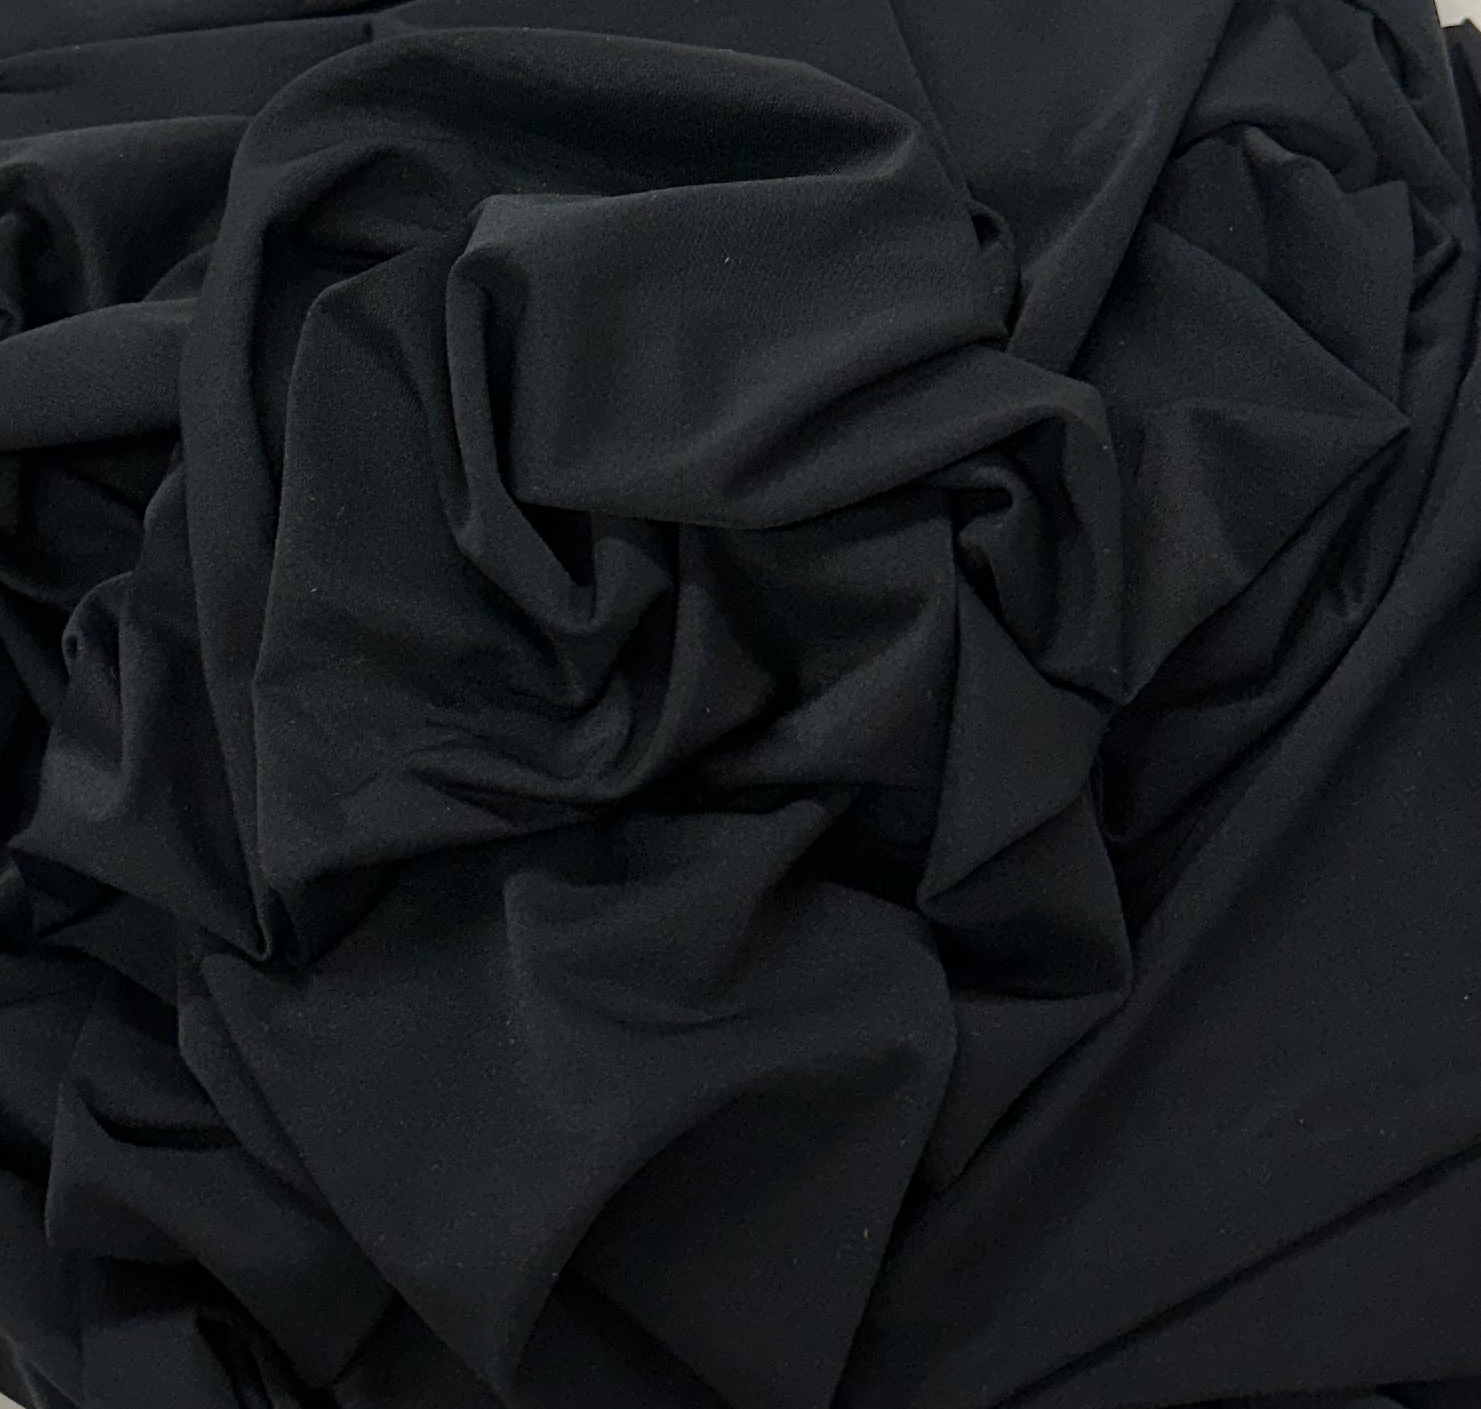 Black Pantie Spandex Fabric